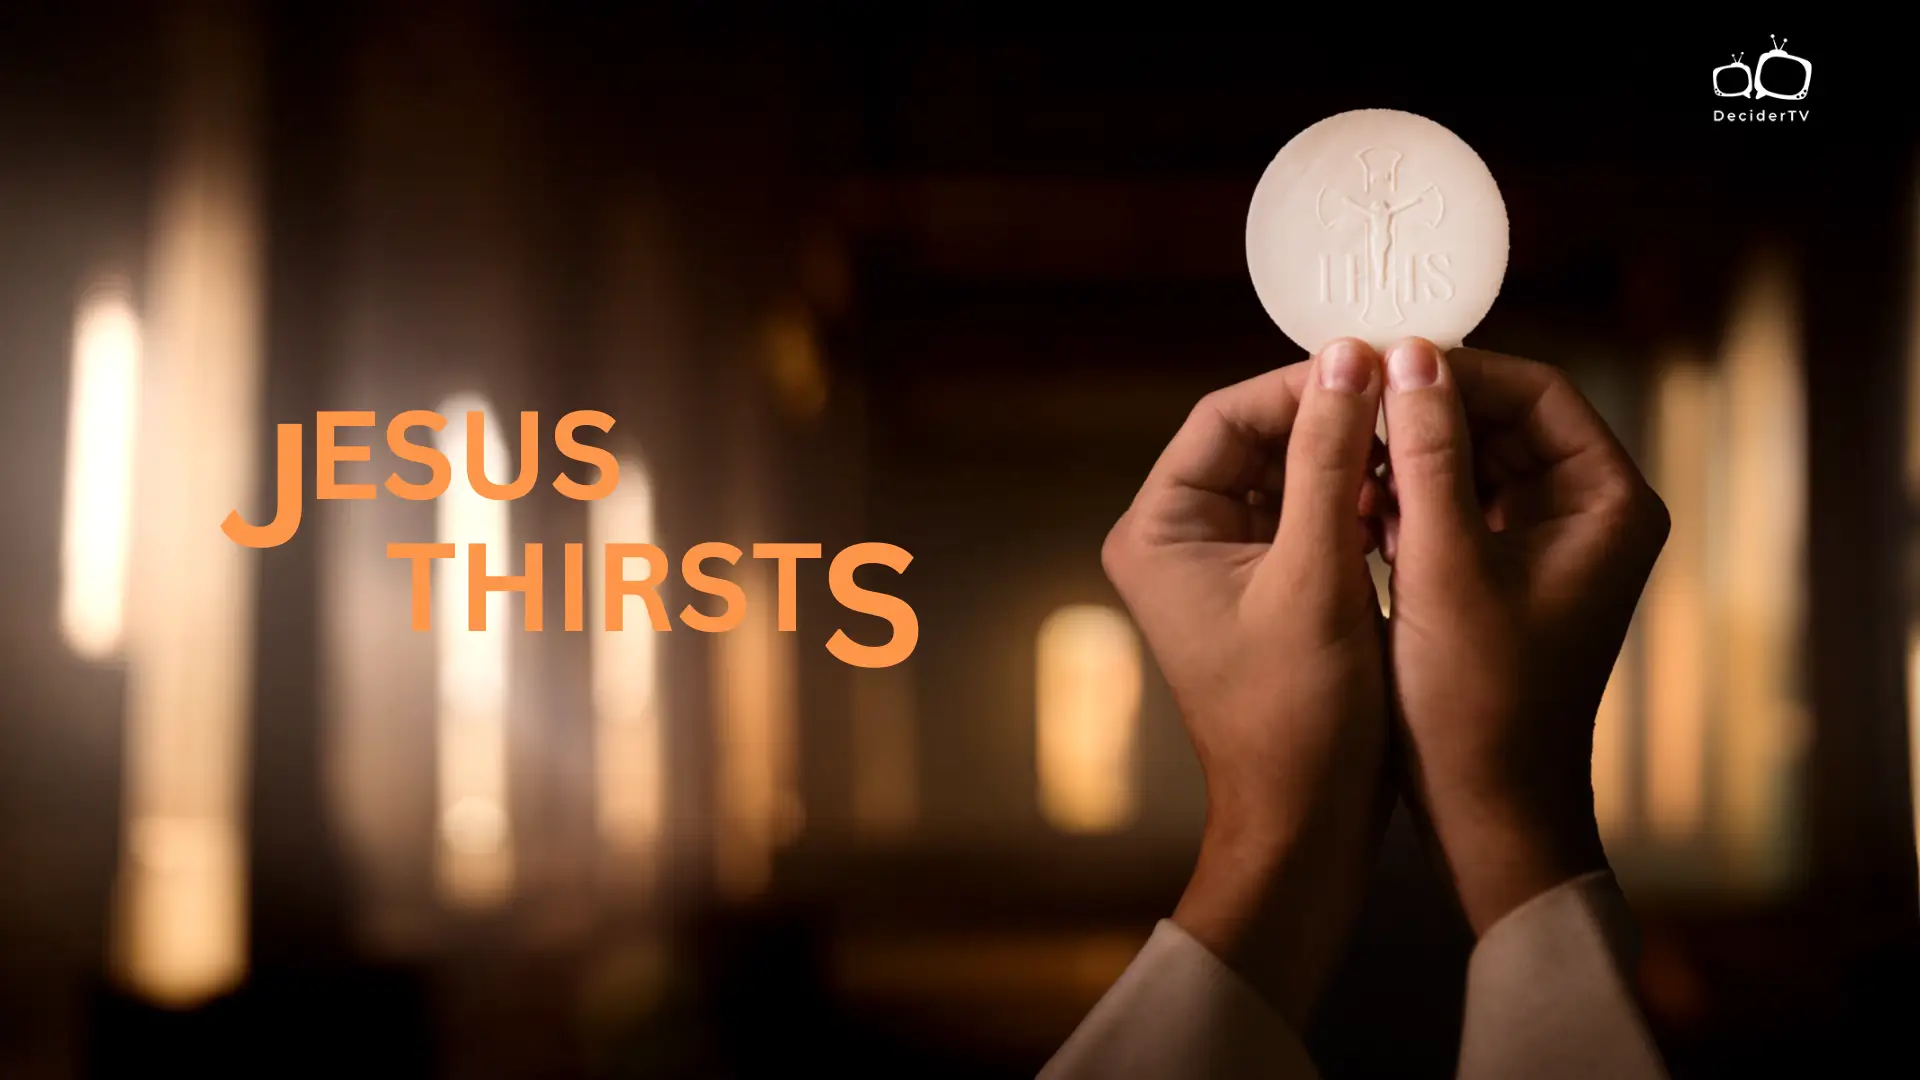 Jesus Thirsts